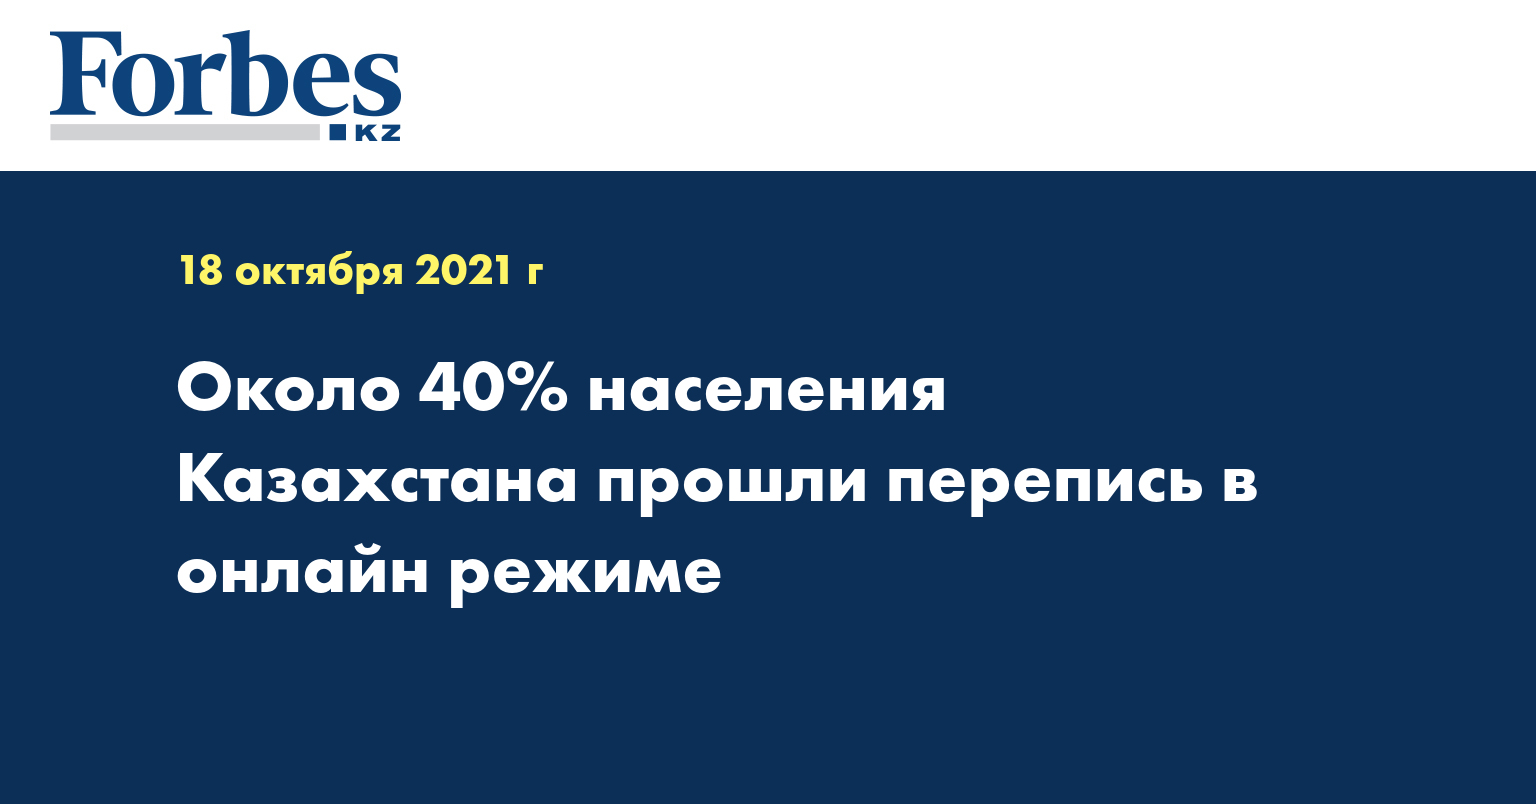 Около 40% населения Казахстана прошли перепись в онлайн режиме